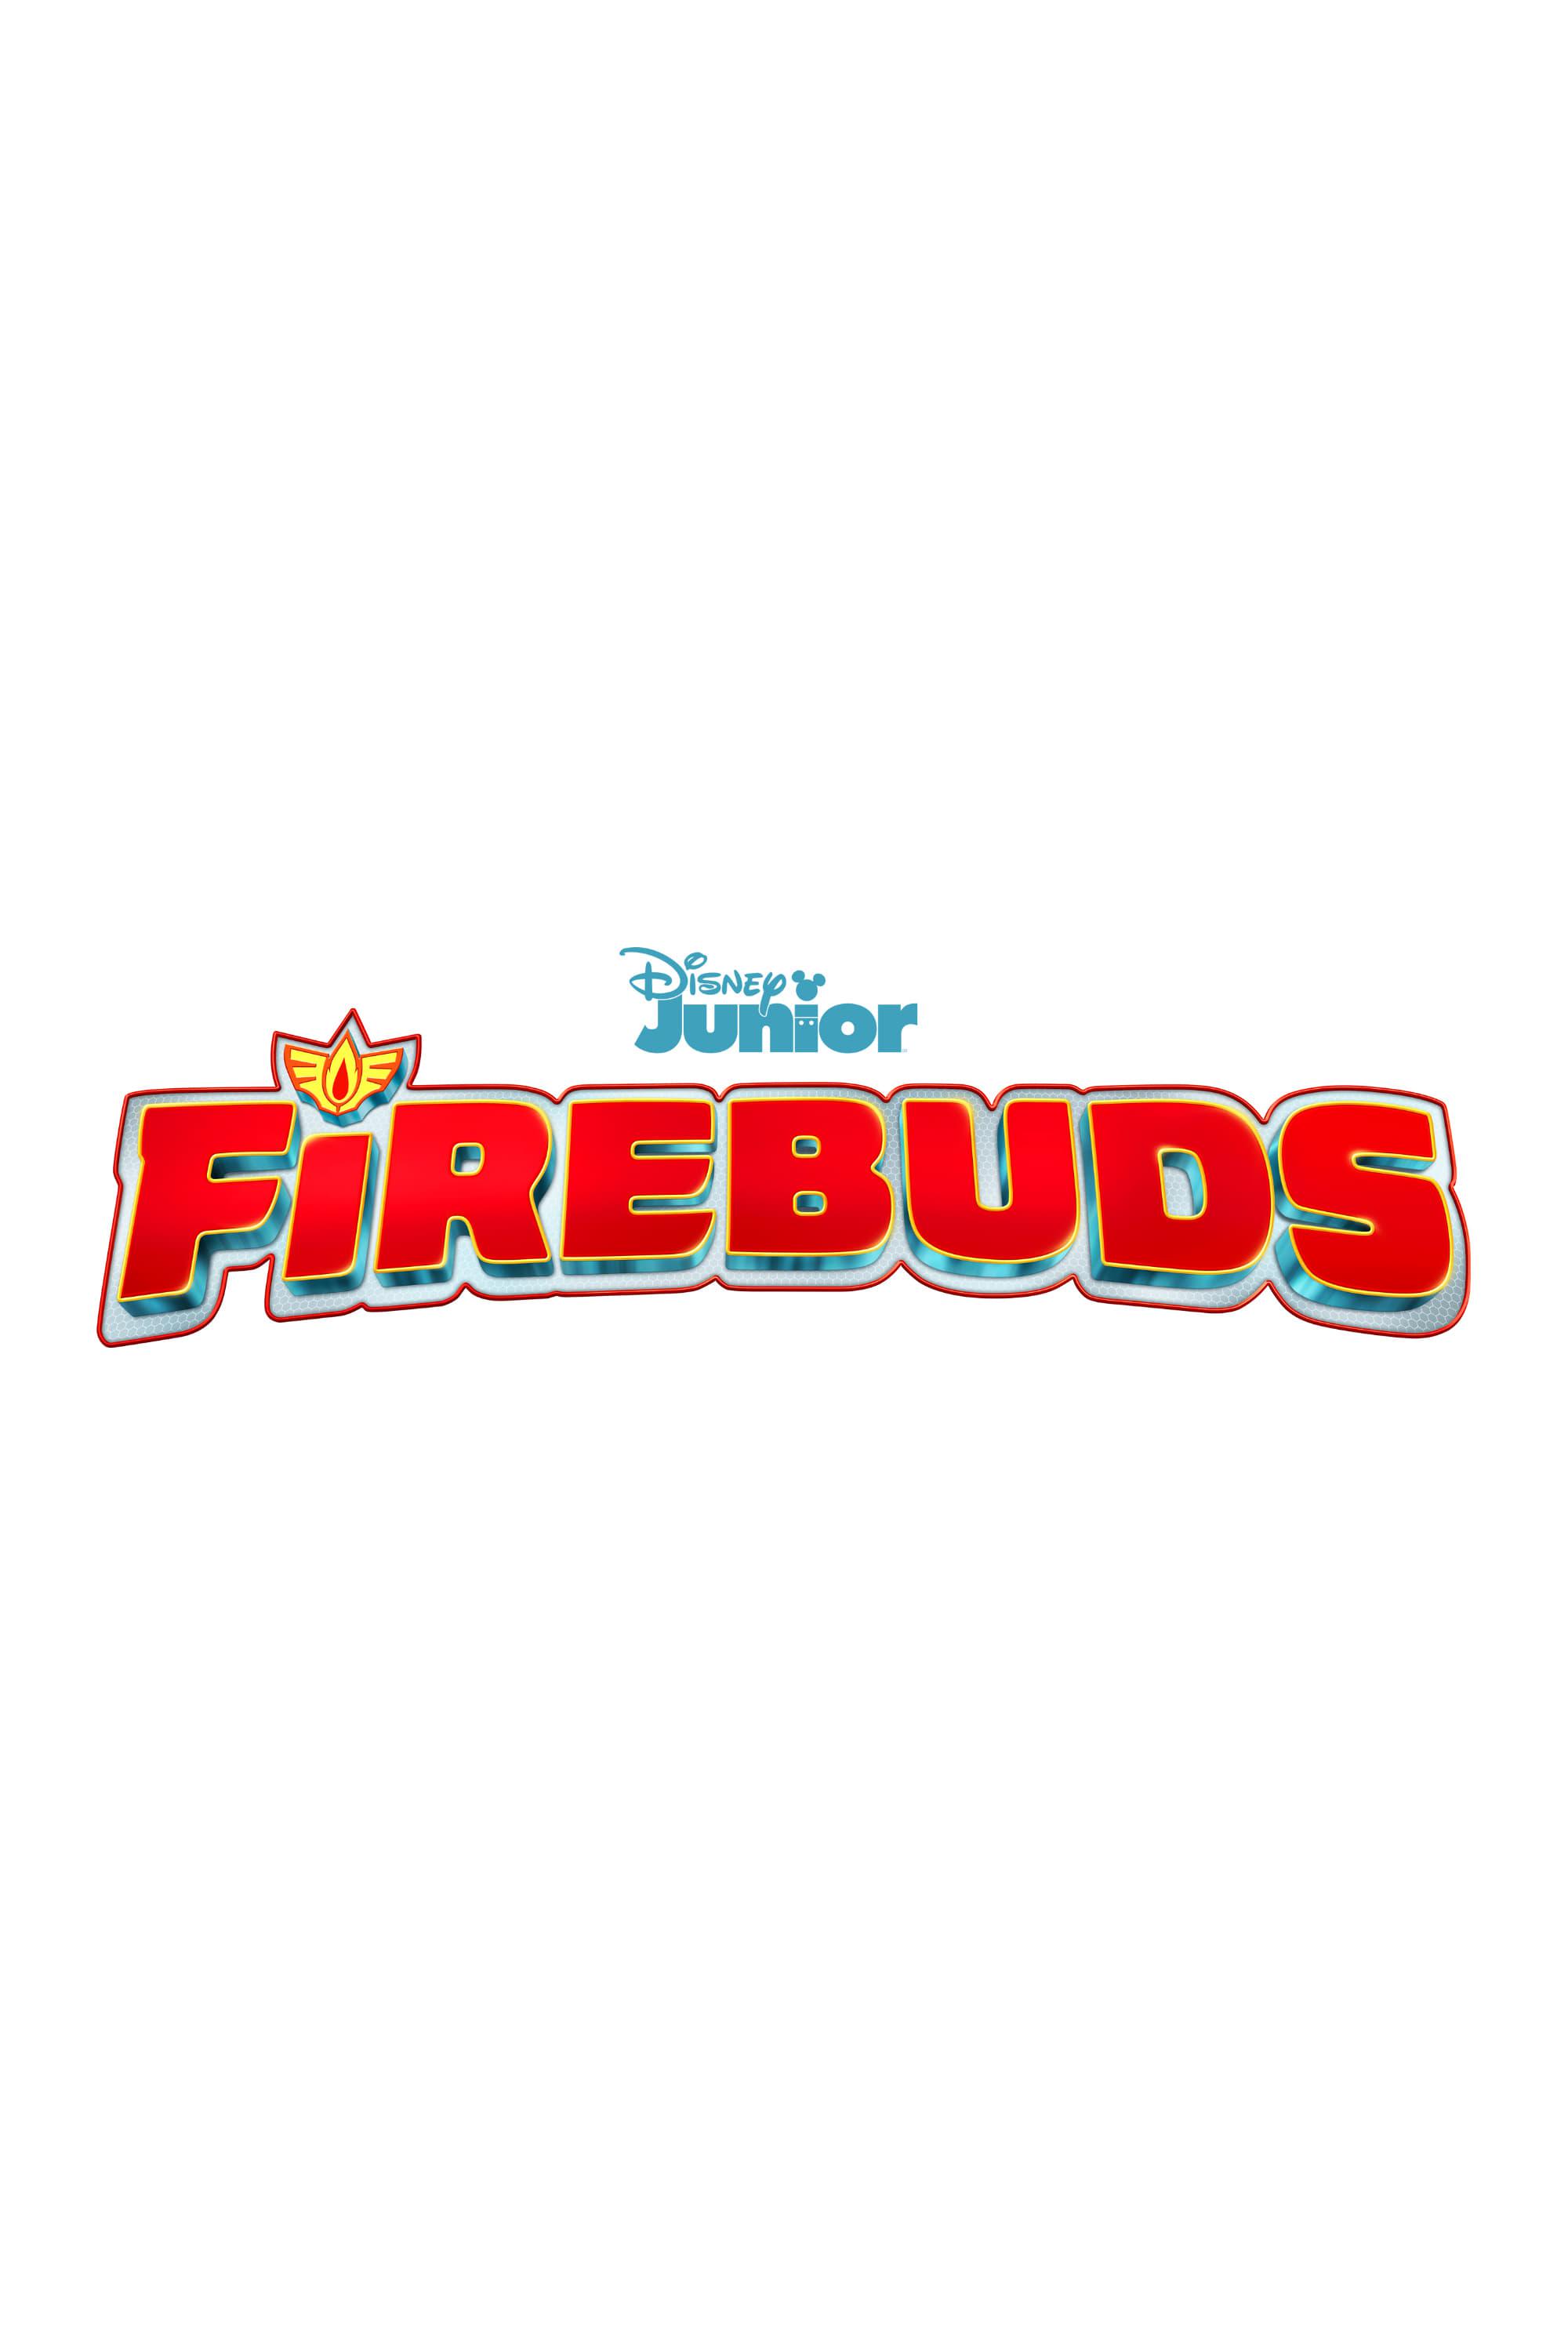 TV ratings for Firebuds in Irlanda. Disney Junior TV series